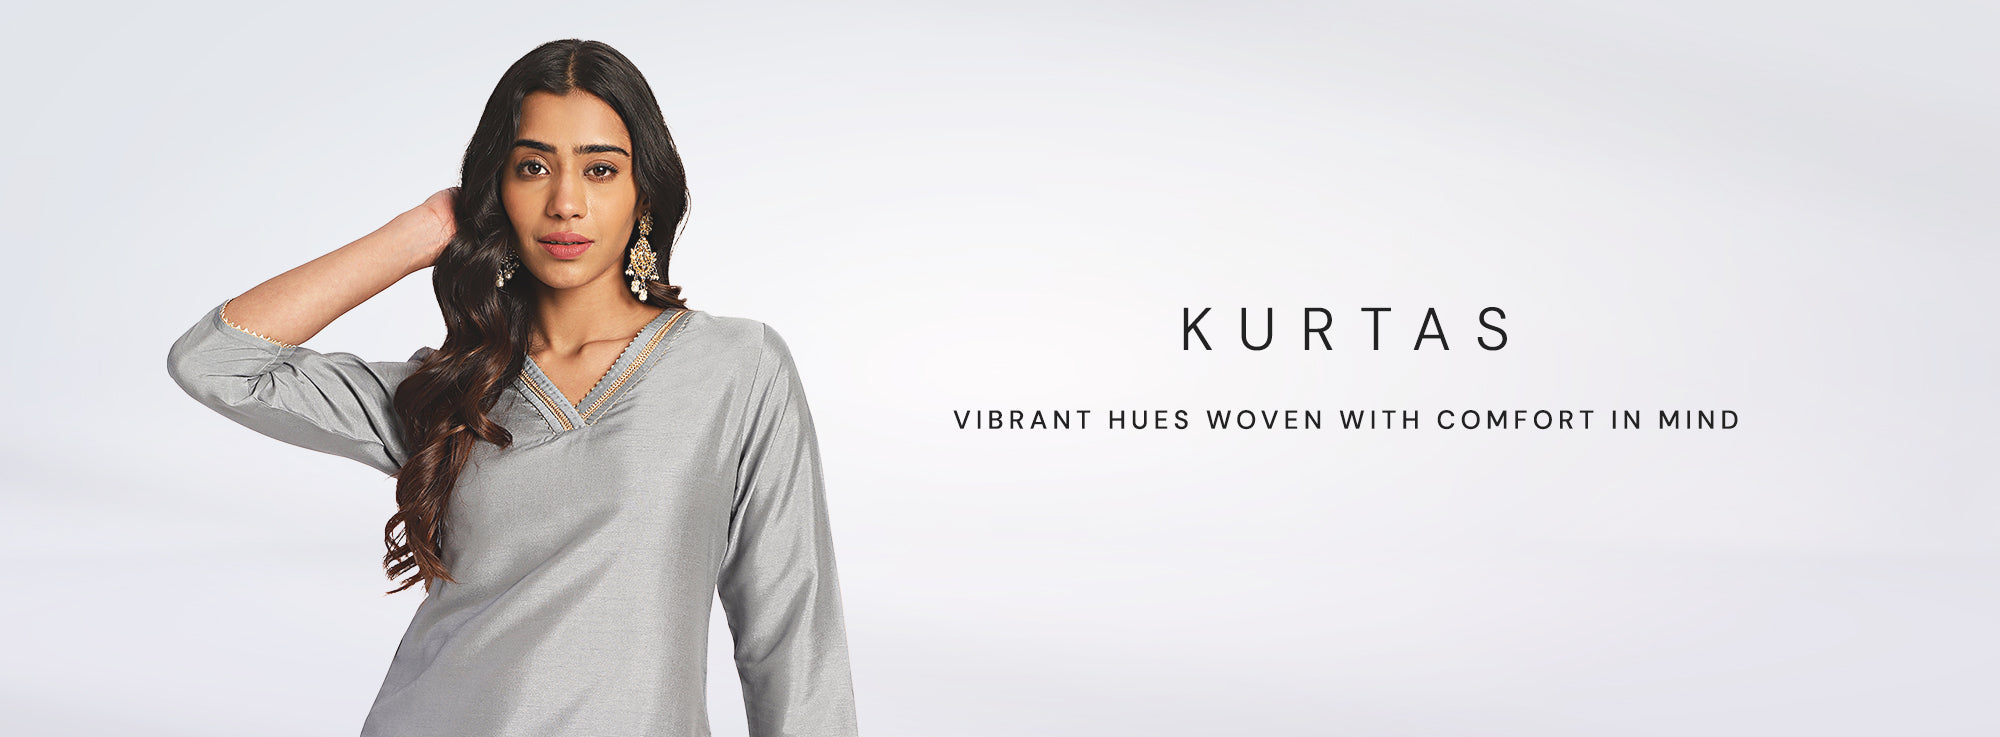 Recycle Old Sarees To Kurtis | Designs Of Kurtis Made From Old Sarees